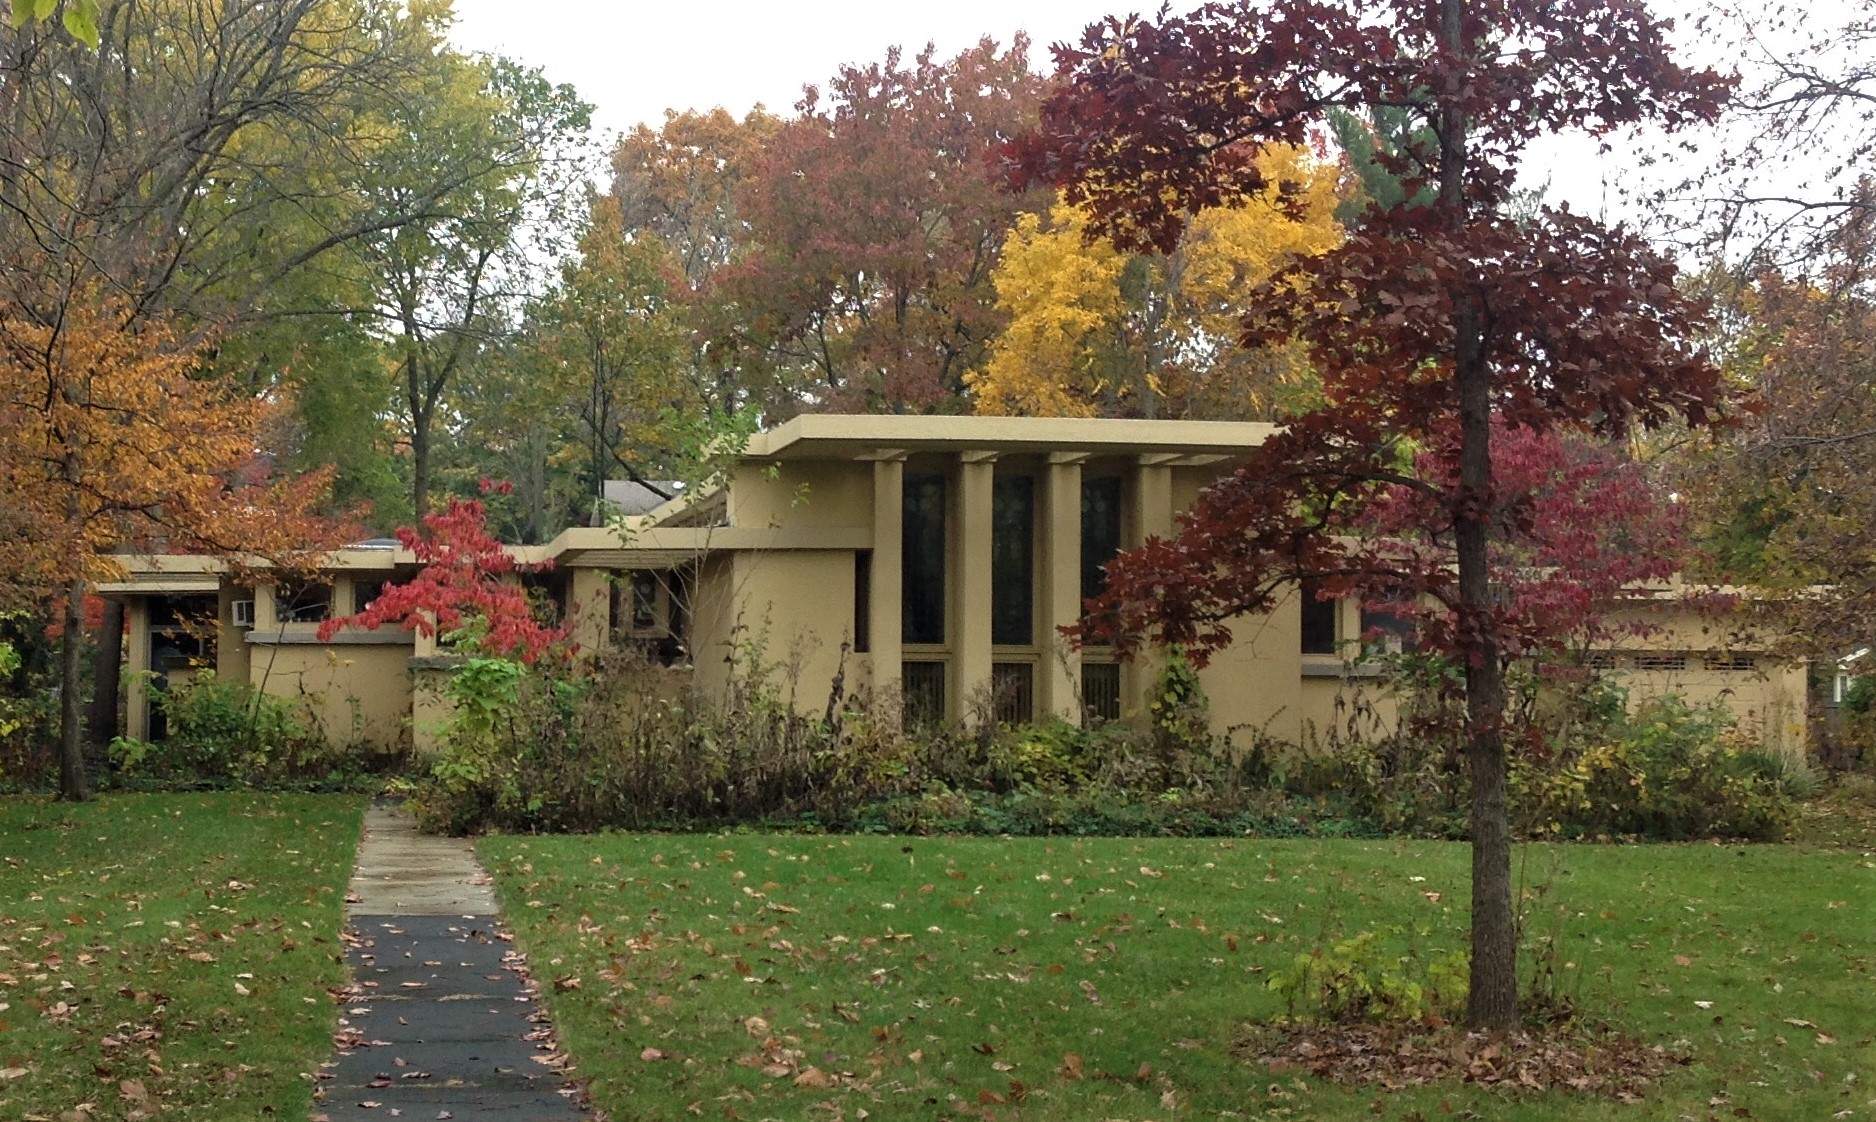 Une maison du début du 20e siècle au milieu des arbres, à l'automne